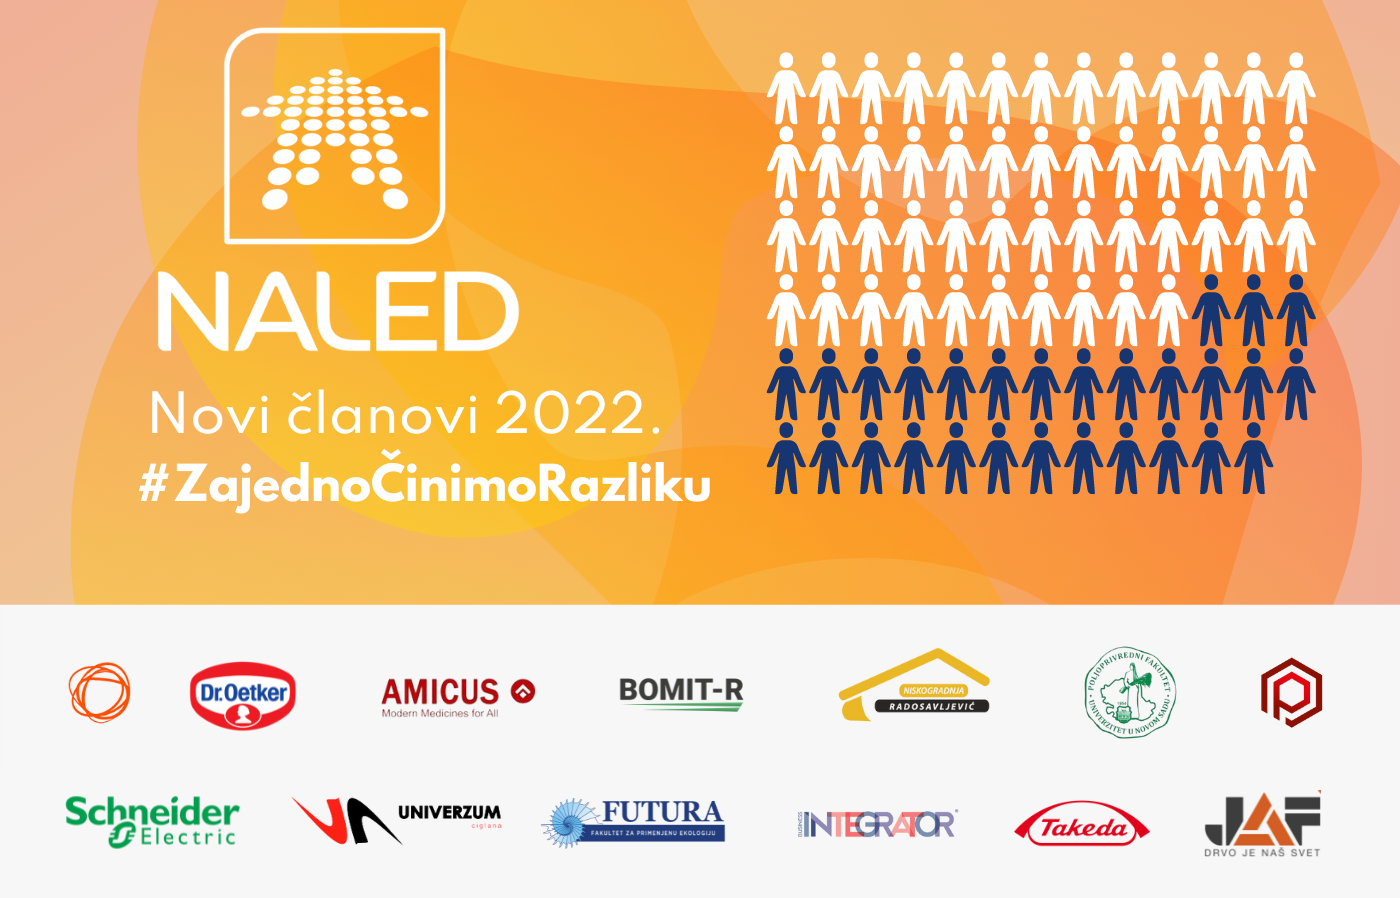 Osnaženo članstvo NALED-a u prvoj polovini 2022.